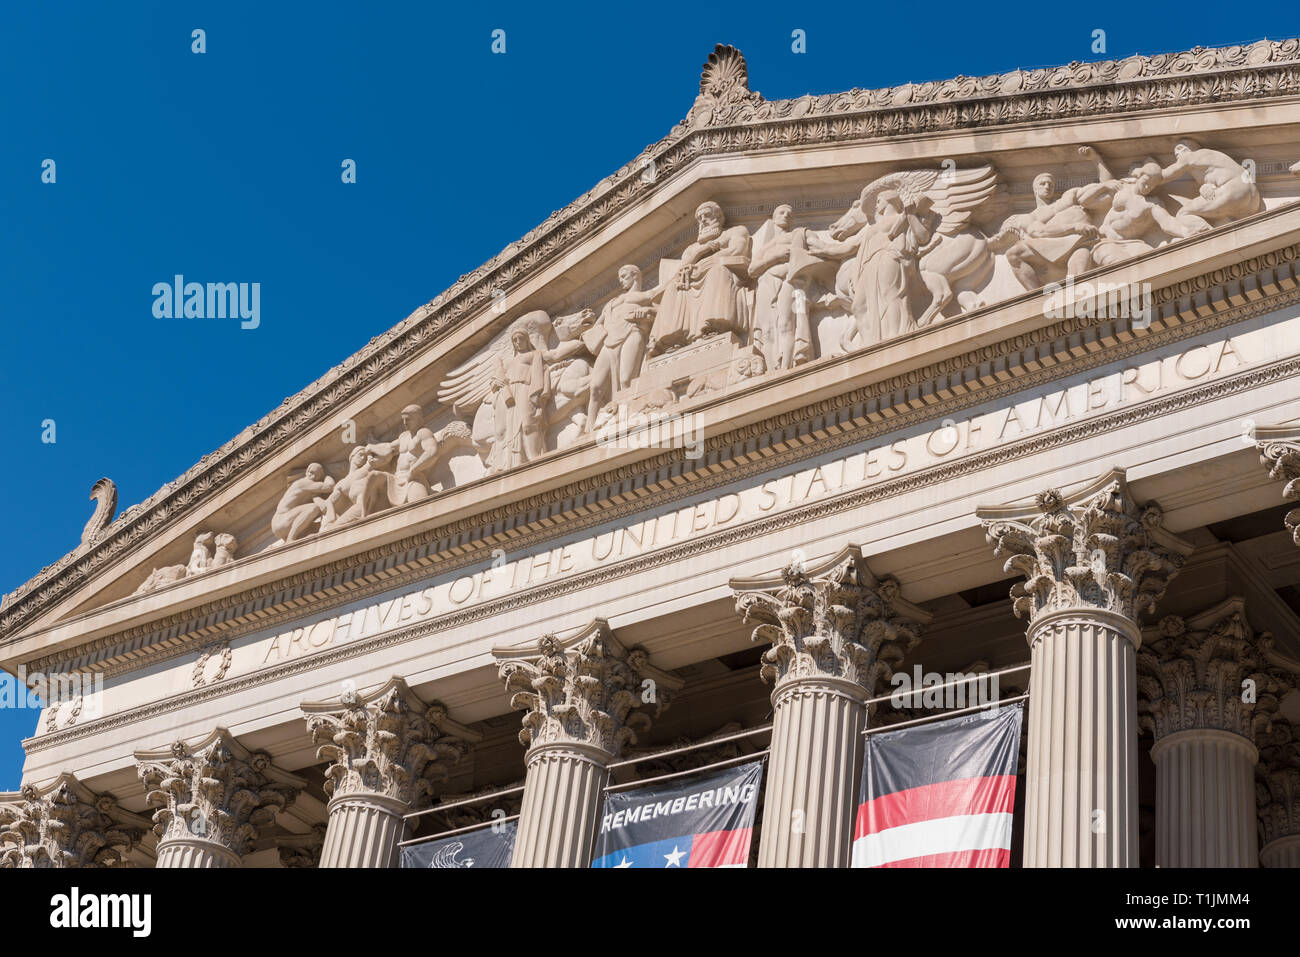 Archives nationales, Washington DC, USA. Vue de la façade du bâtiment finement sculptés de logement-nous Déclaration d'indépendance et déclaration des droits de l'homme Banque D'Images